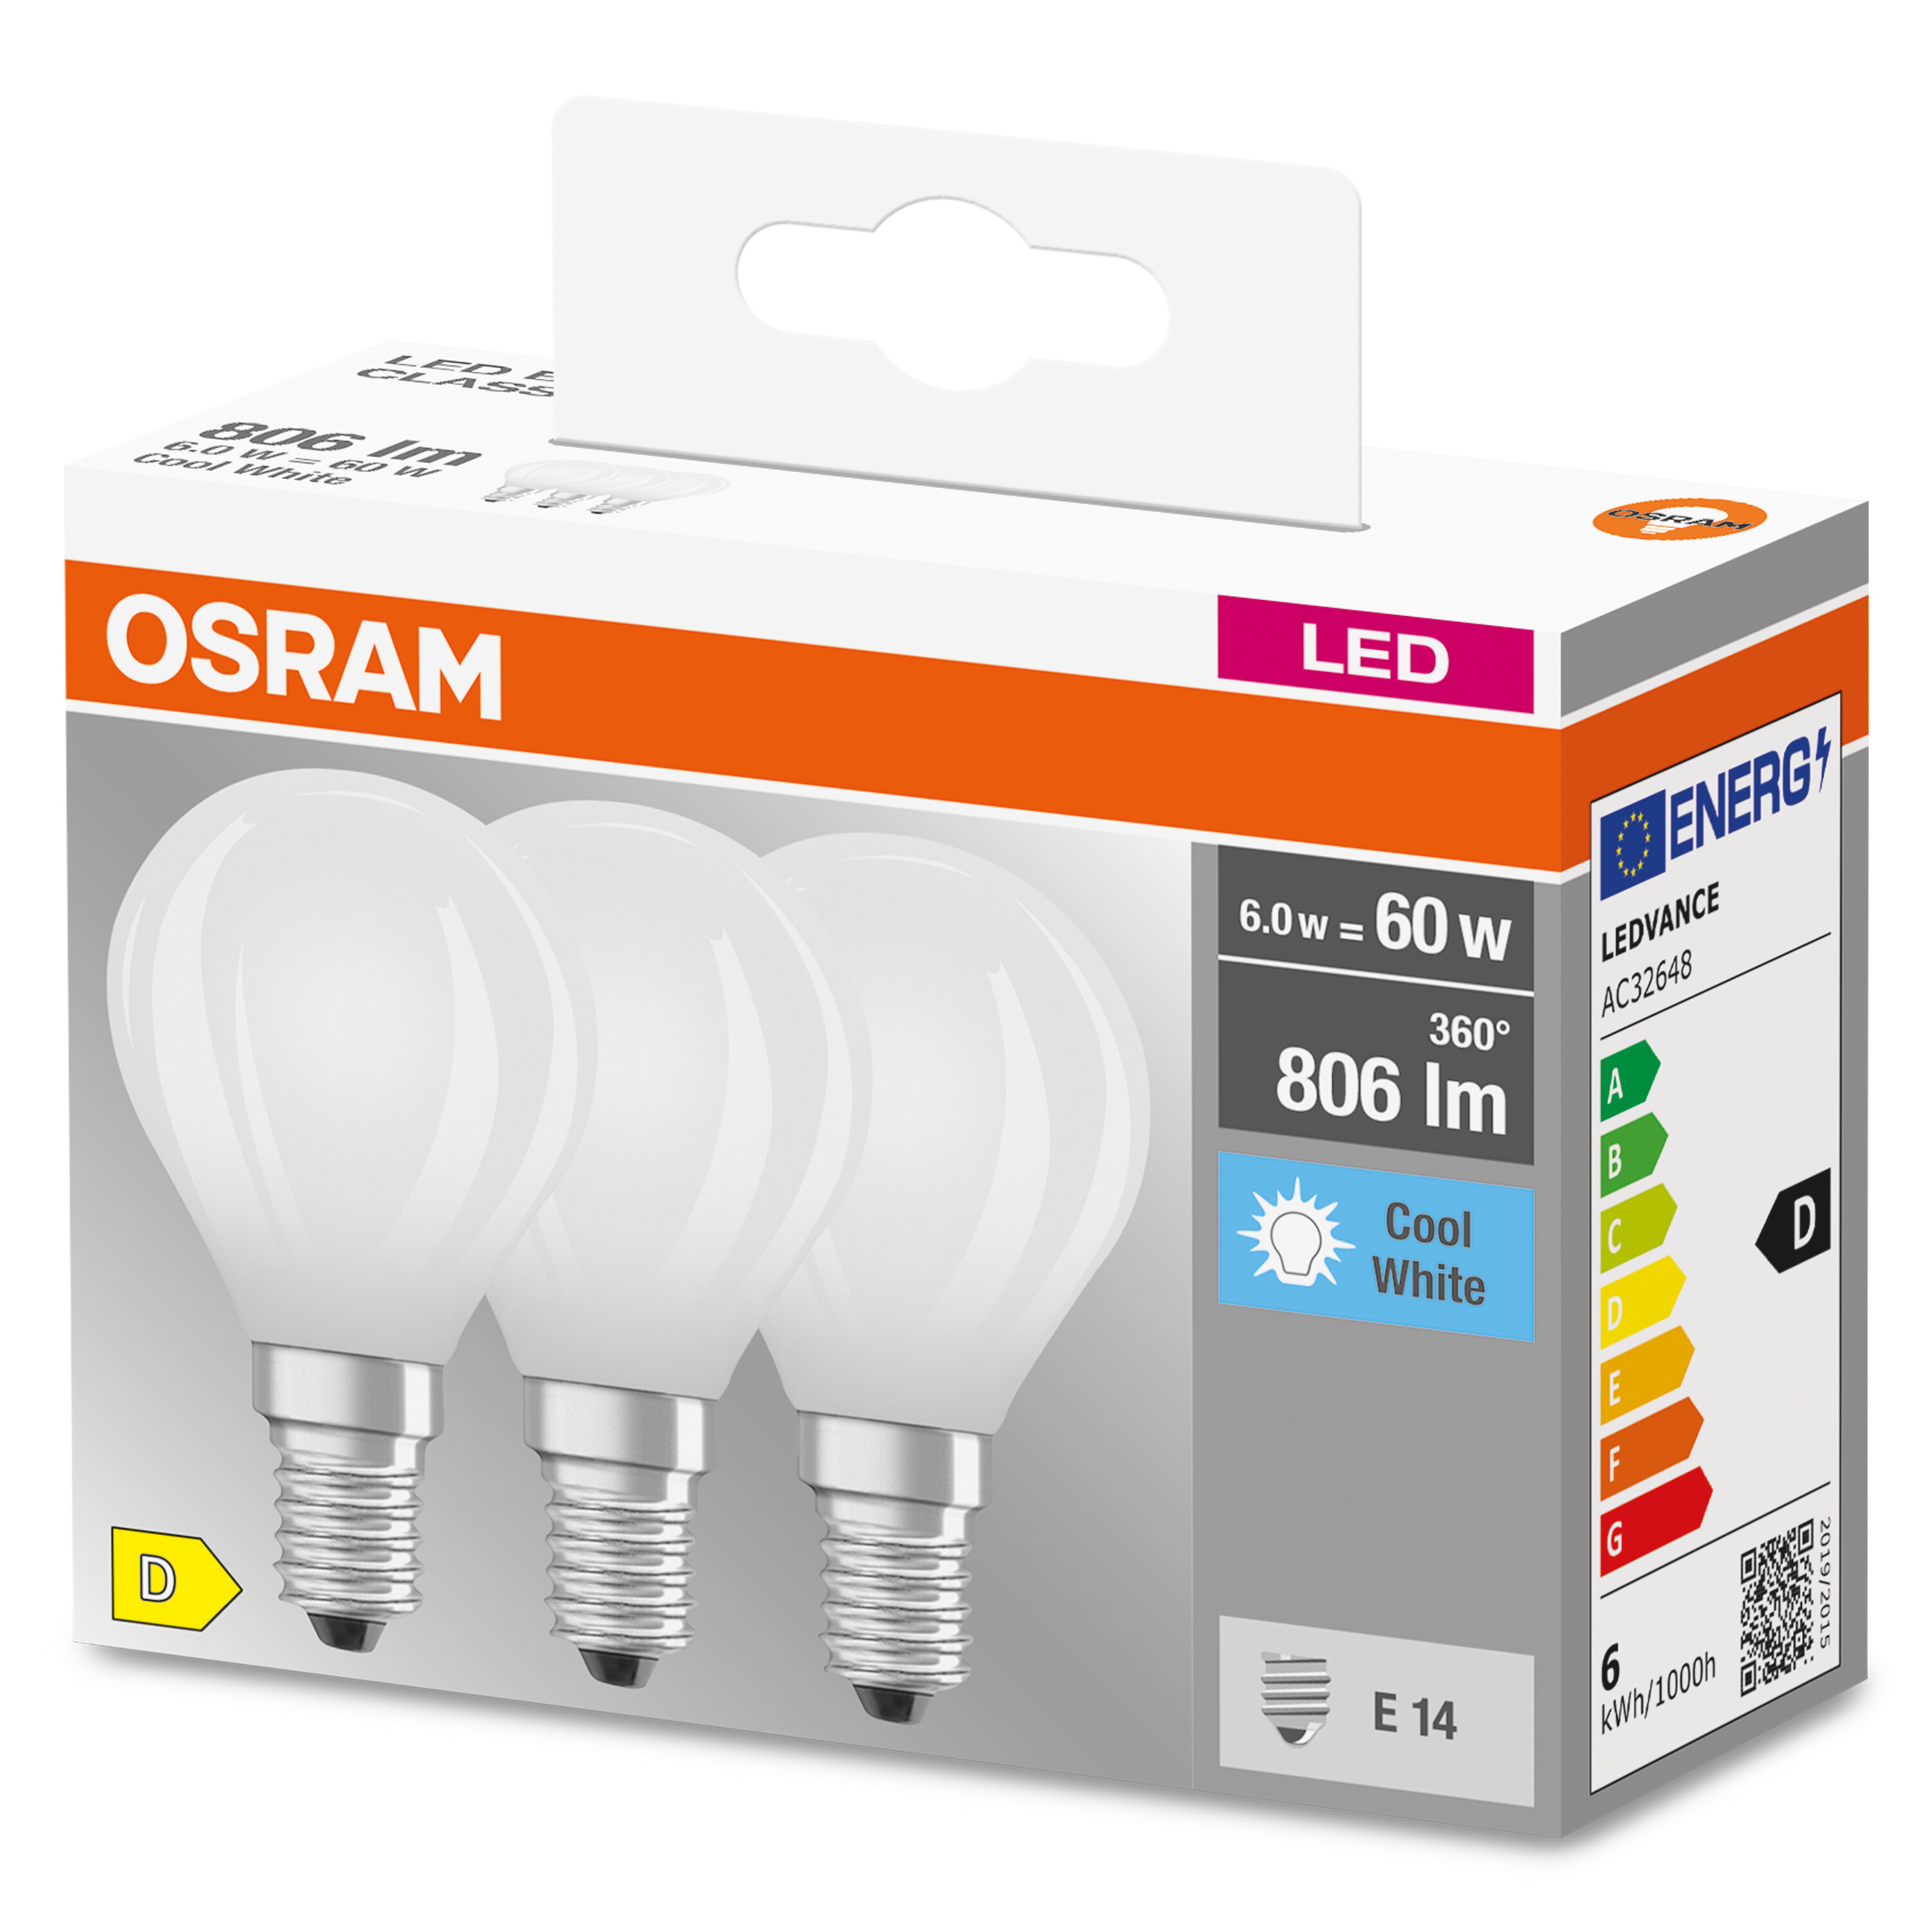 OSRAM  LED BASE CLASSIC P Kaltweiß Lumen LED 806 Lampe